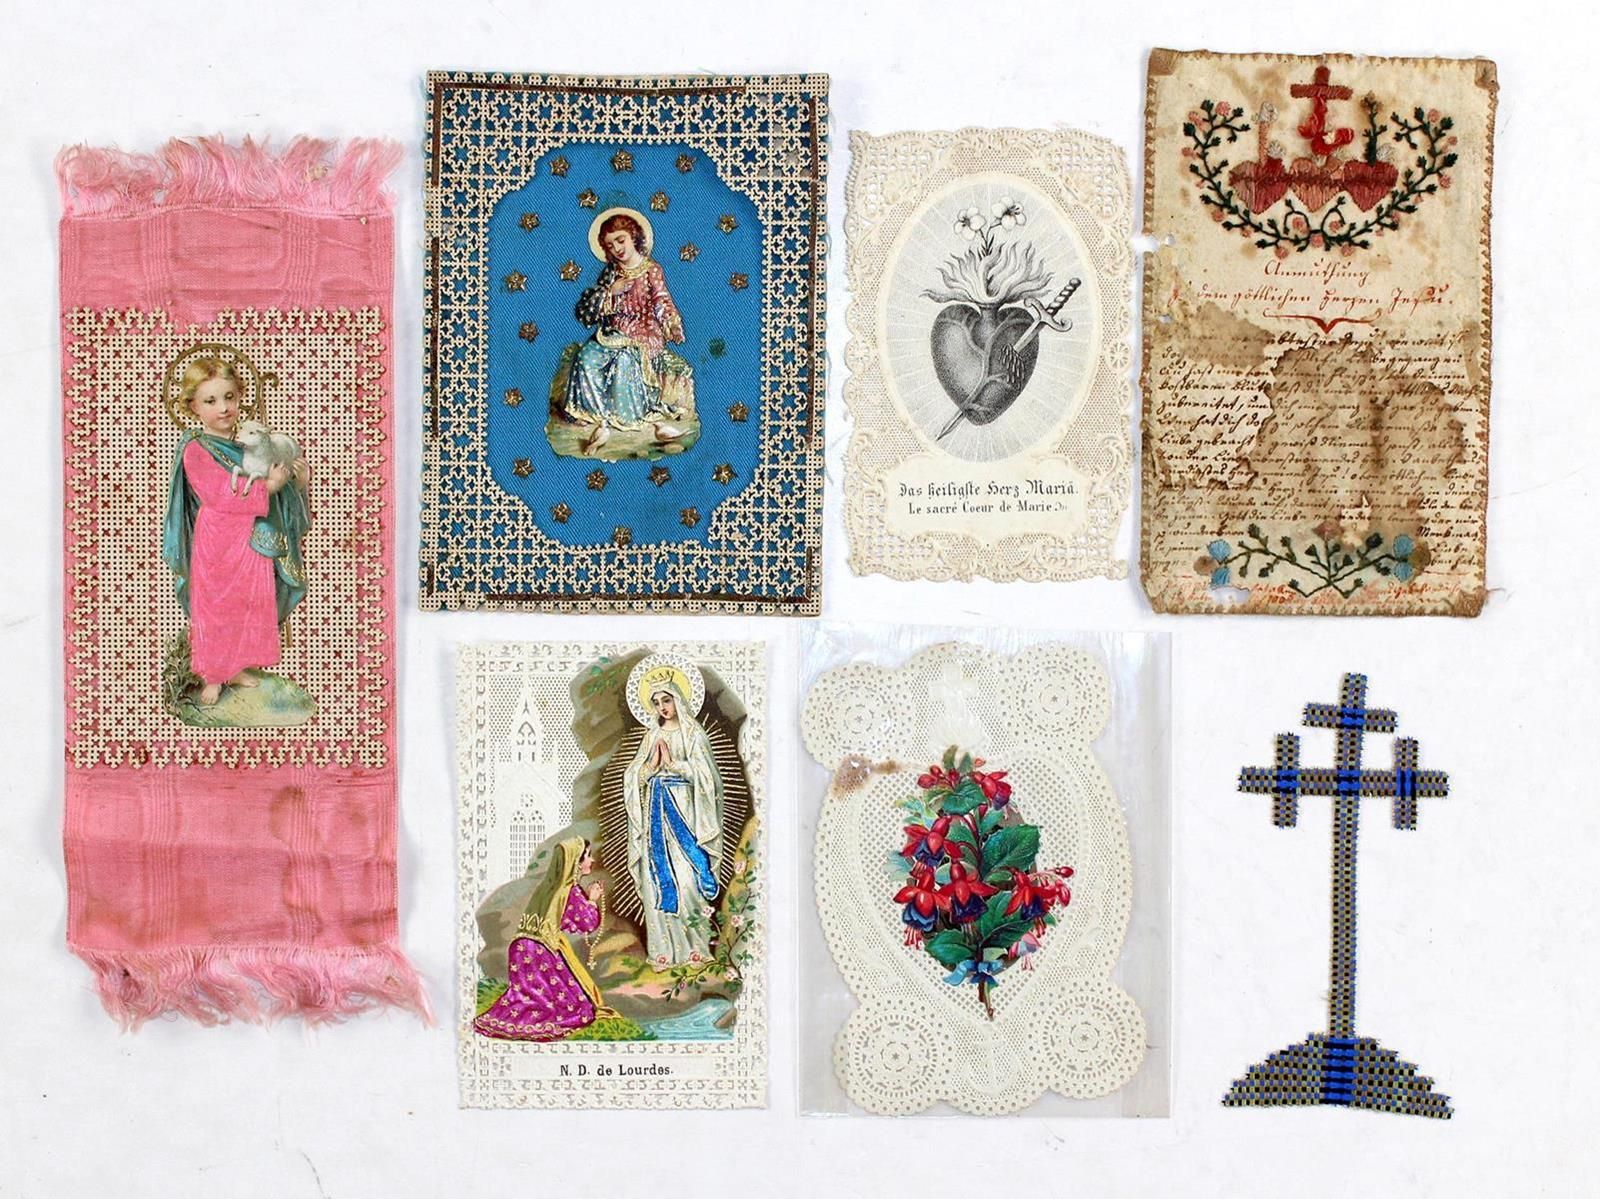 Sammlung de plus de 100 images en partie colorées. Images de saints, de pèlerina&hellip;